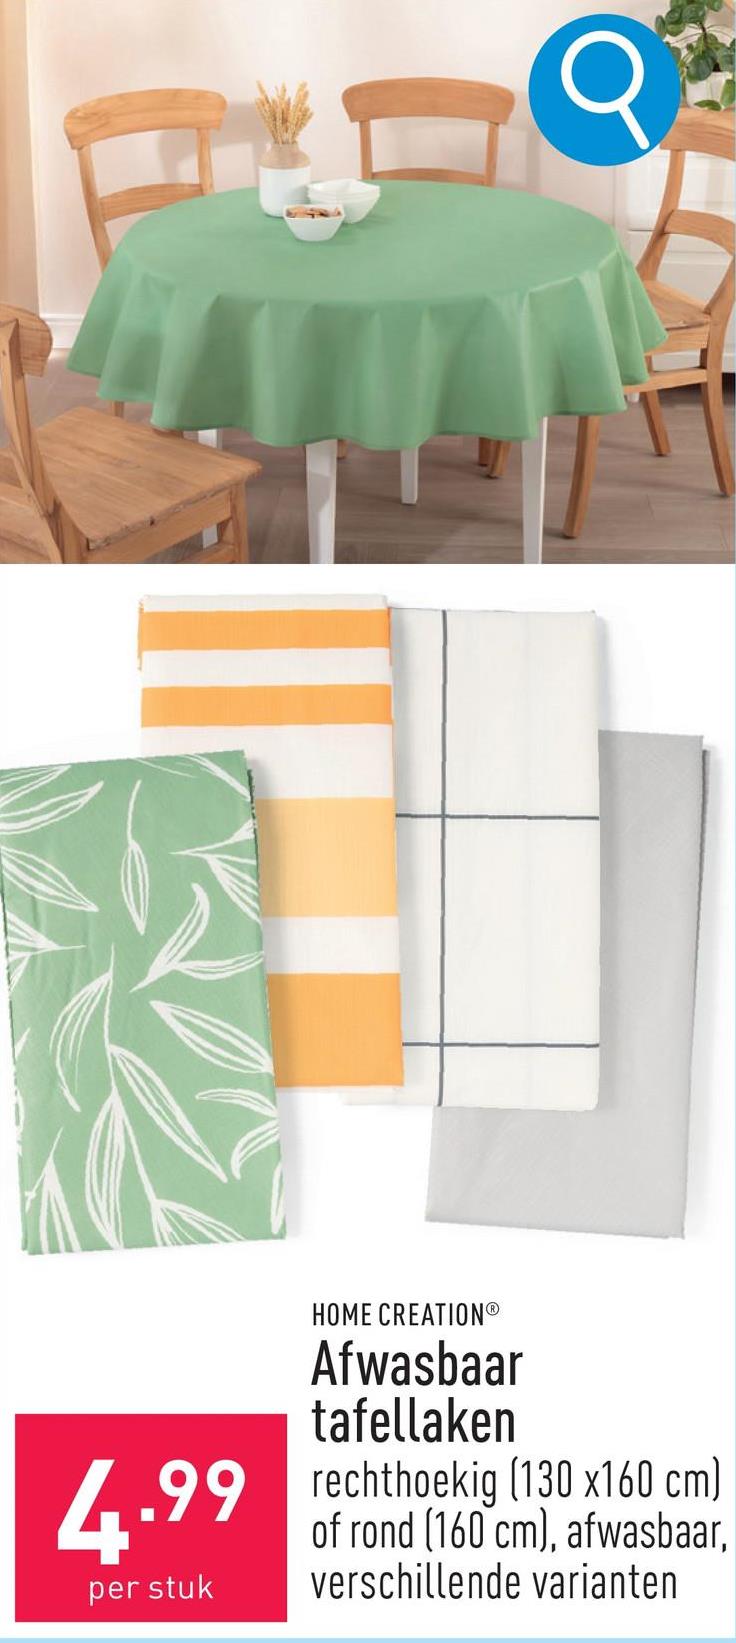 Afwasbaar tafellaken polyester, keuze uit rechthoekig (130 x 160 cm) en rond (160 cm), afwasbaar, keuze uit verschillende varianten, OEKO-TEX®-gecertificeerd